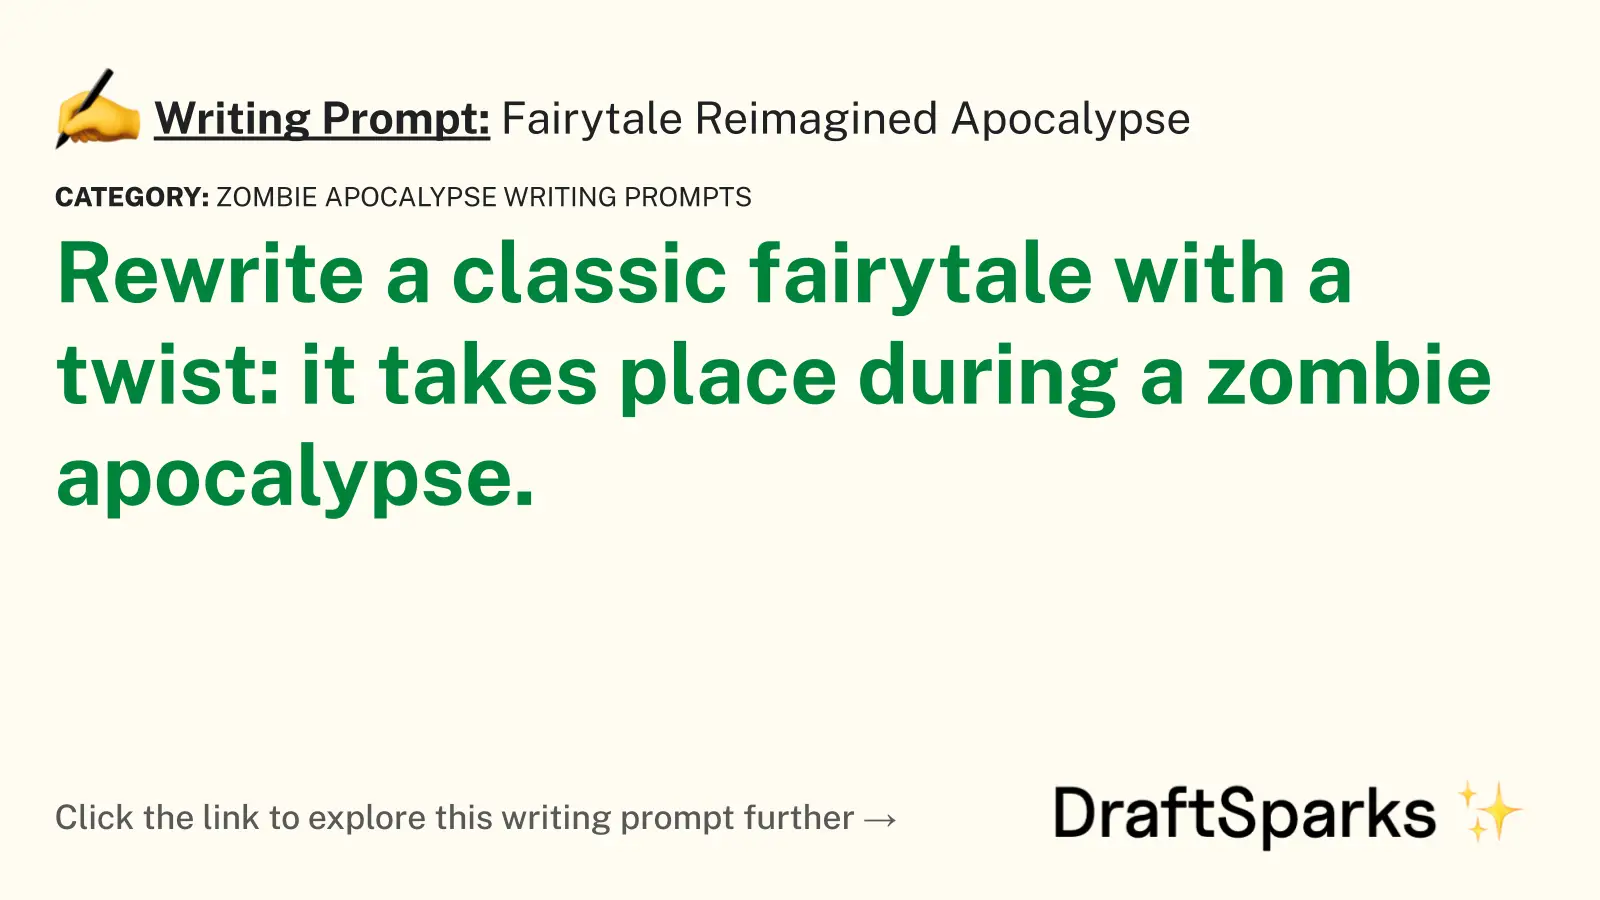 Fairytale Reimagined Apocalypse